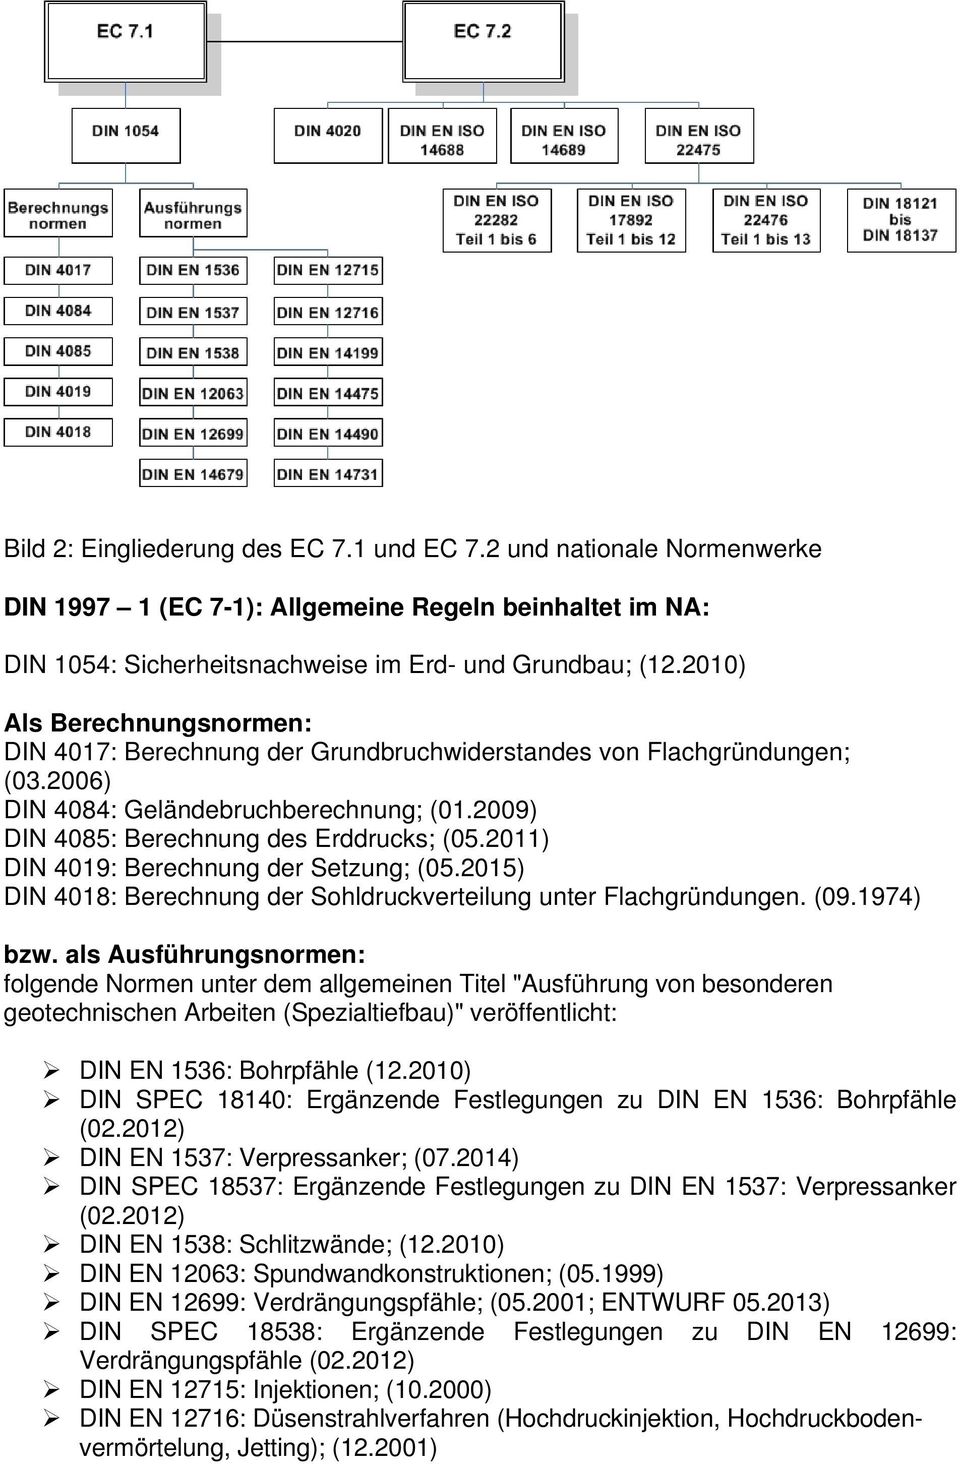 2011) DIN 4019: Berechnung der Setzung; (05.2015) DIN 4018: Berechnung der Sohldruckverteilung unter Flachgründungen. (09.1974) bzw.